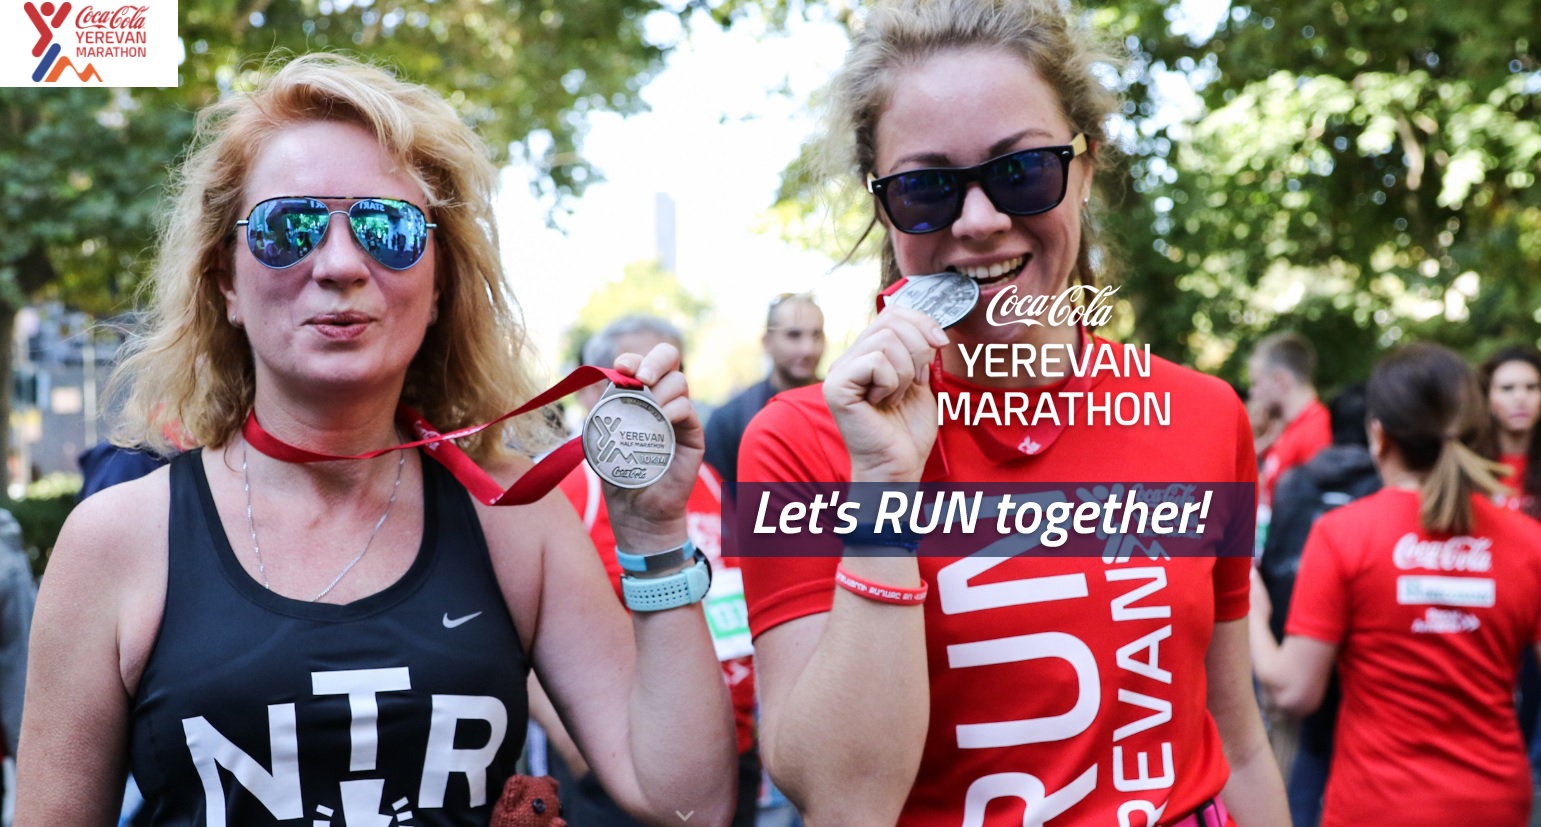 The Coca-Cola Yerevan Marathon 2018 - Race Connections